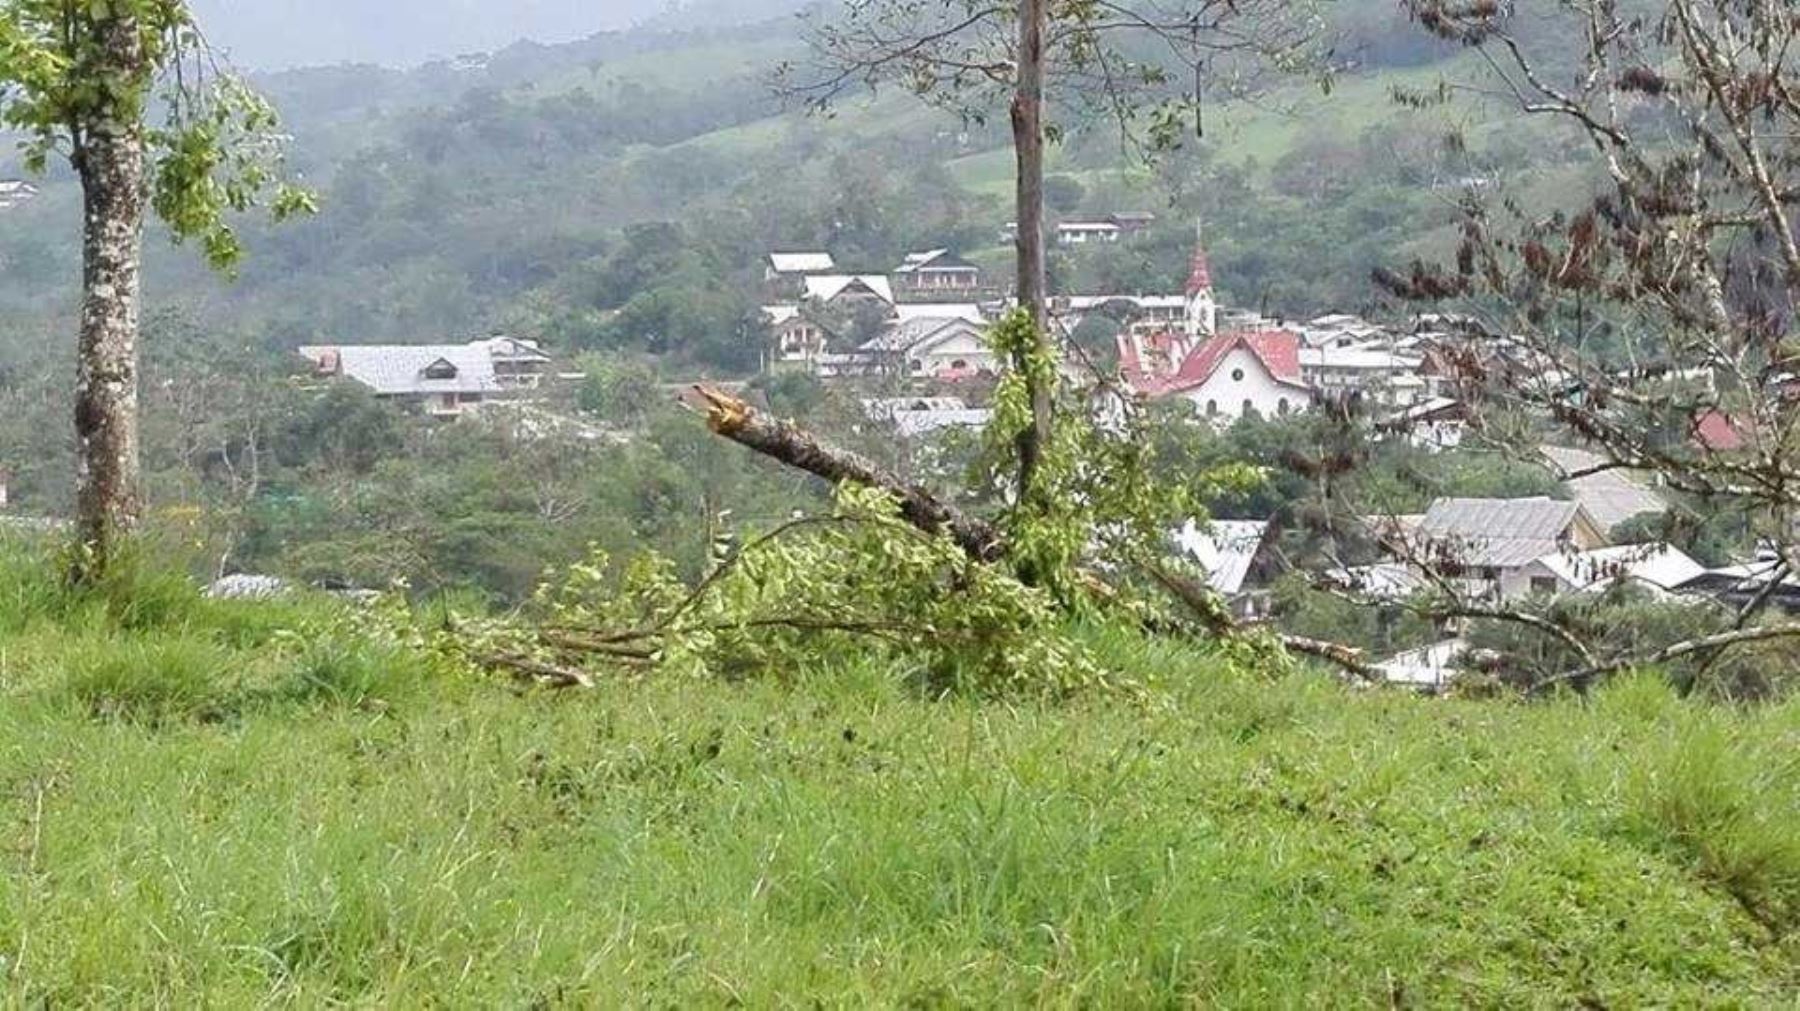 vientos intensos, acompañados de lluvia, se presentaron en la tarde de ayer y causaron daños en viviendas. Además provocaron la caída de árboles.